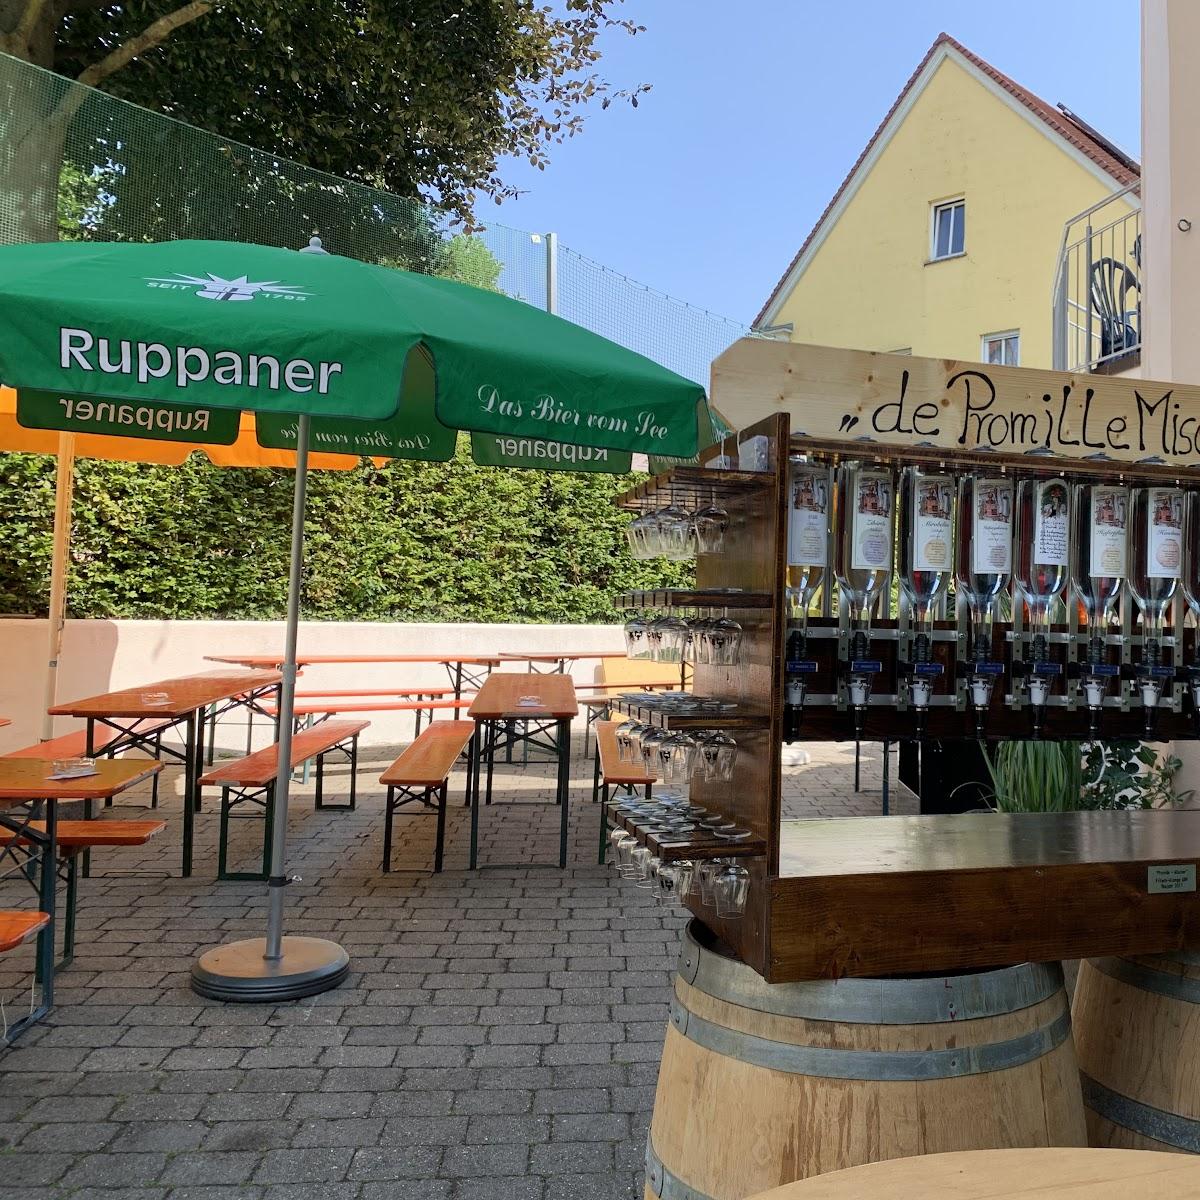 Restaurant "Scharfes Eck" in Allensbach